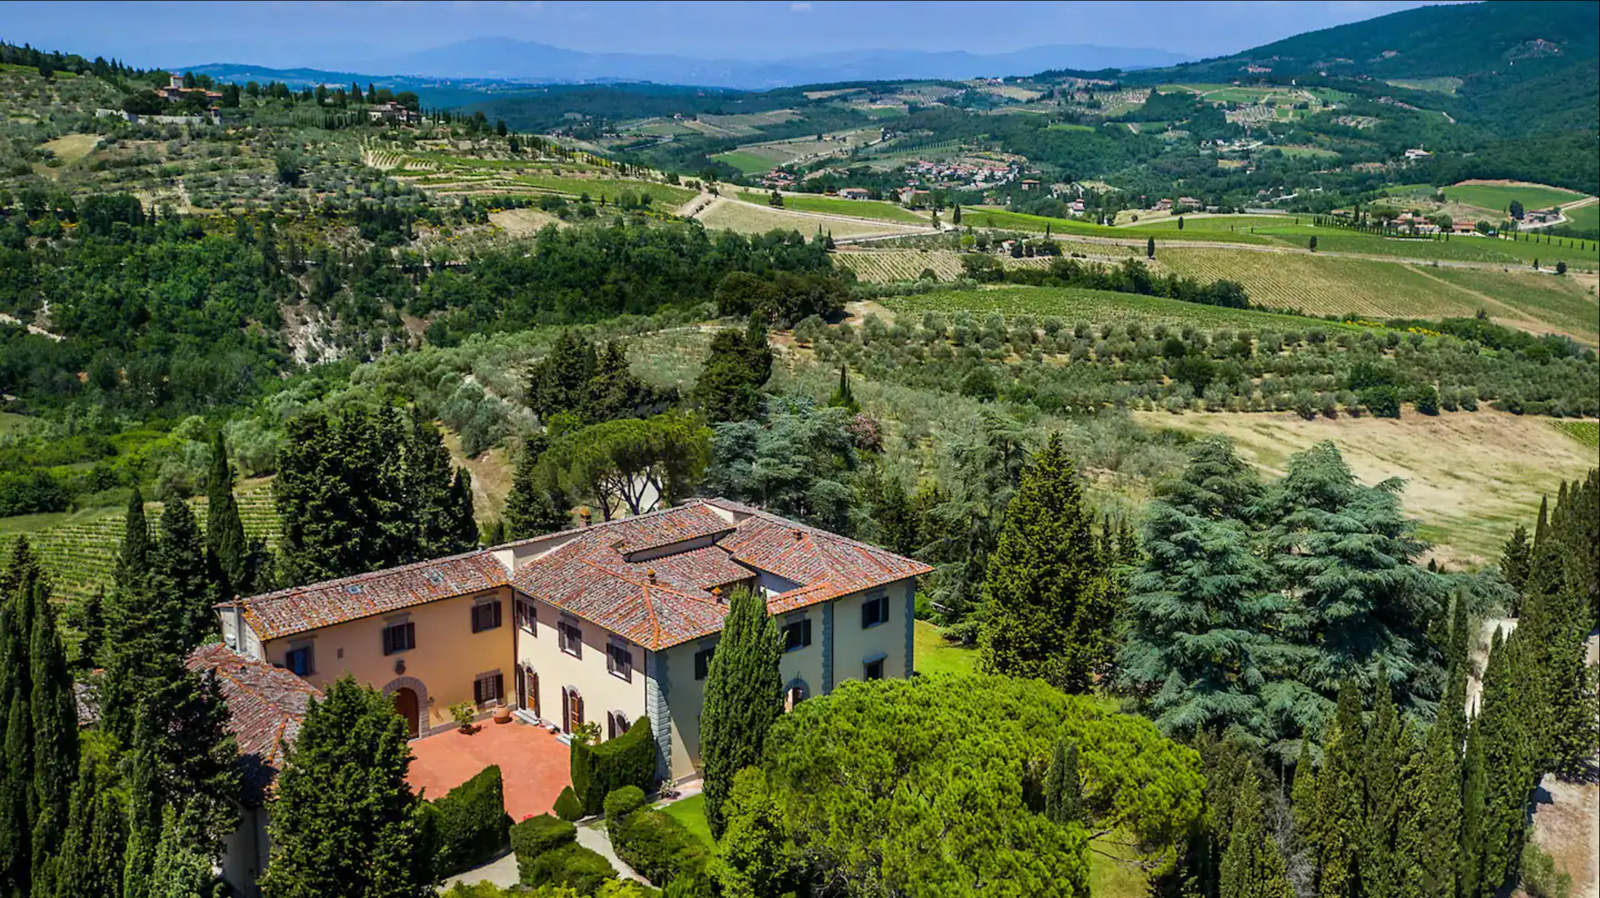 Blick auf die Villa Benedetta und die Landschaft des Chianti